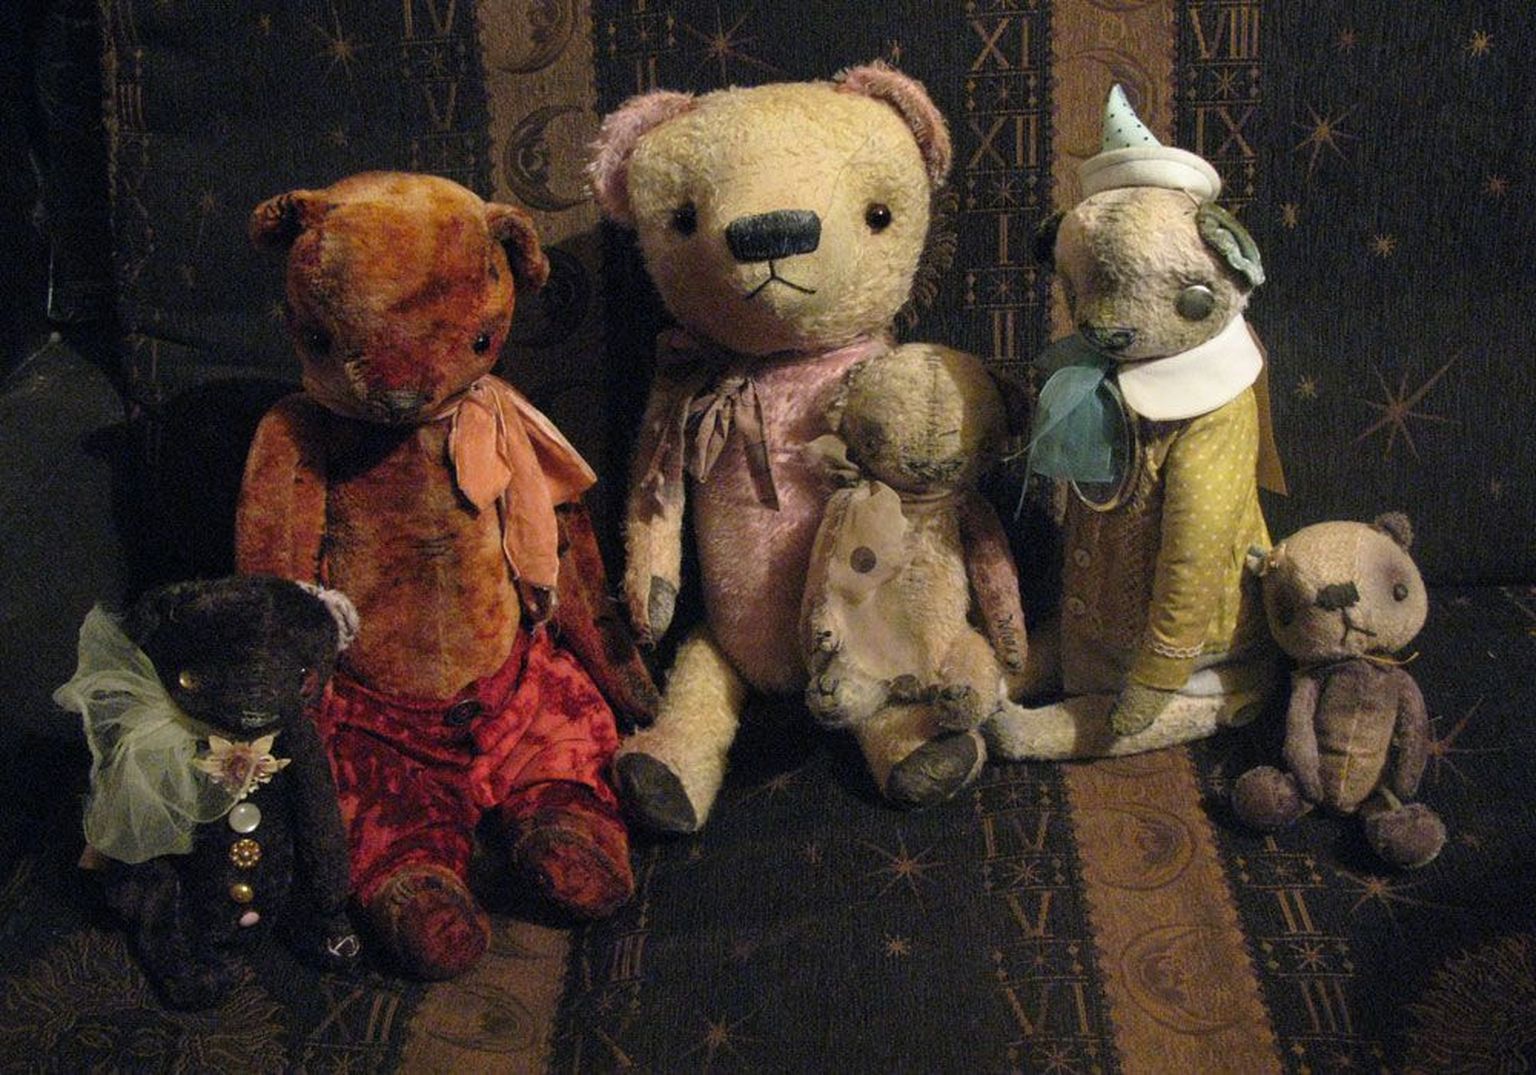 Обладательница крупнейшей в странах Балтии коллекции медвежат художница Света Алексеева к 110-му юбилею мишки Тедди готовит выставку избранных экспонатов и фотографий, посвященных медведям.